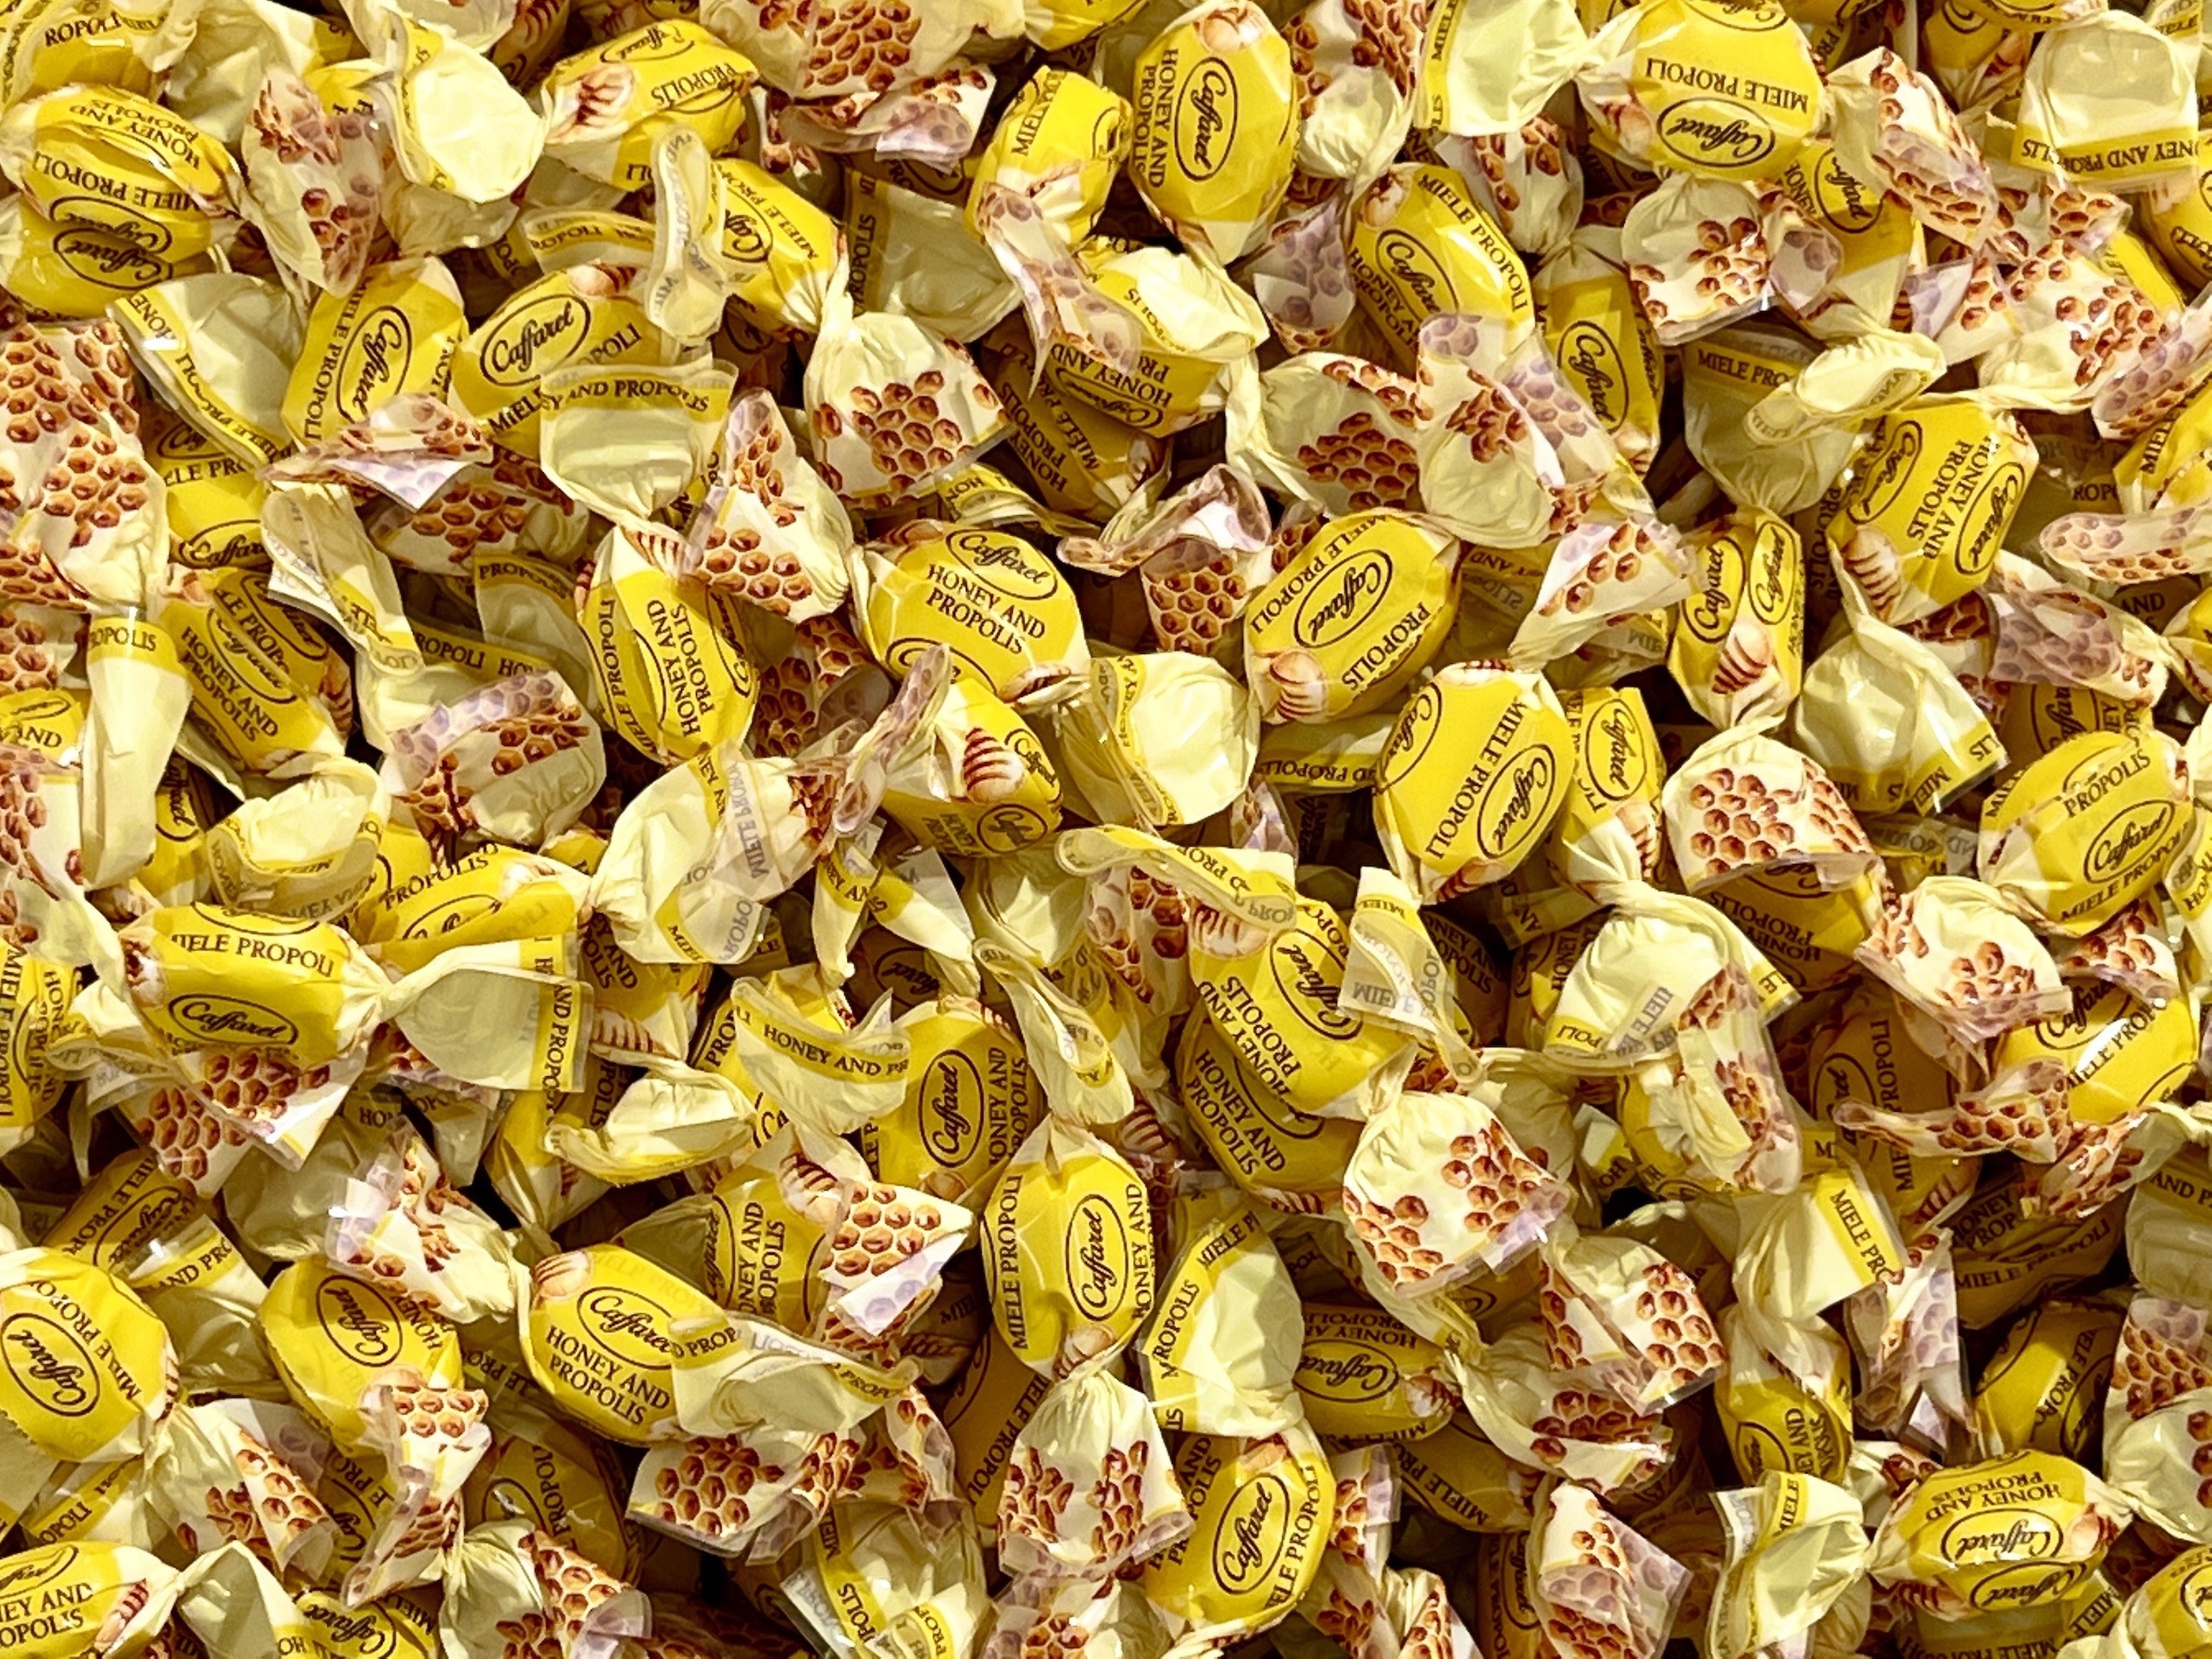 Vendita online caramelle Caffarel miele e propoli prezzo